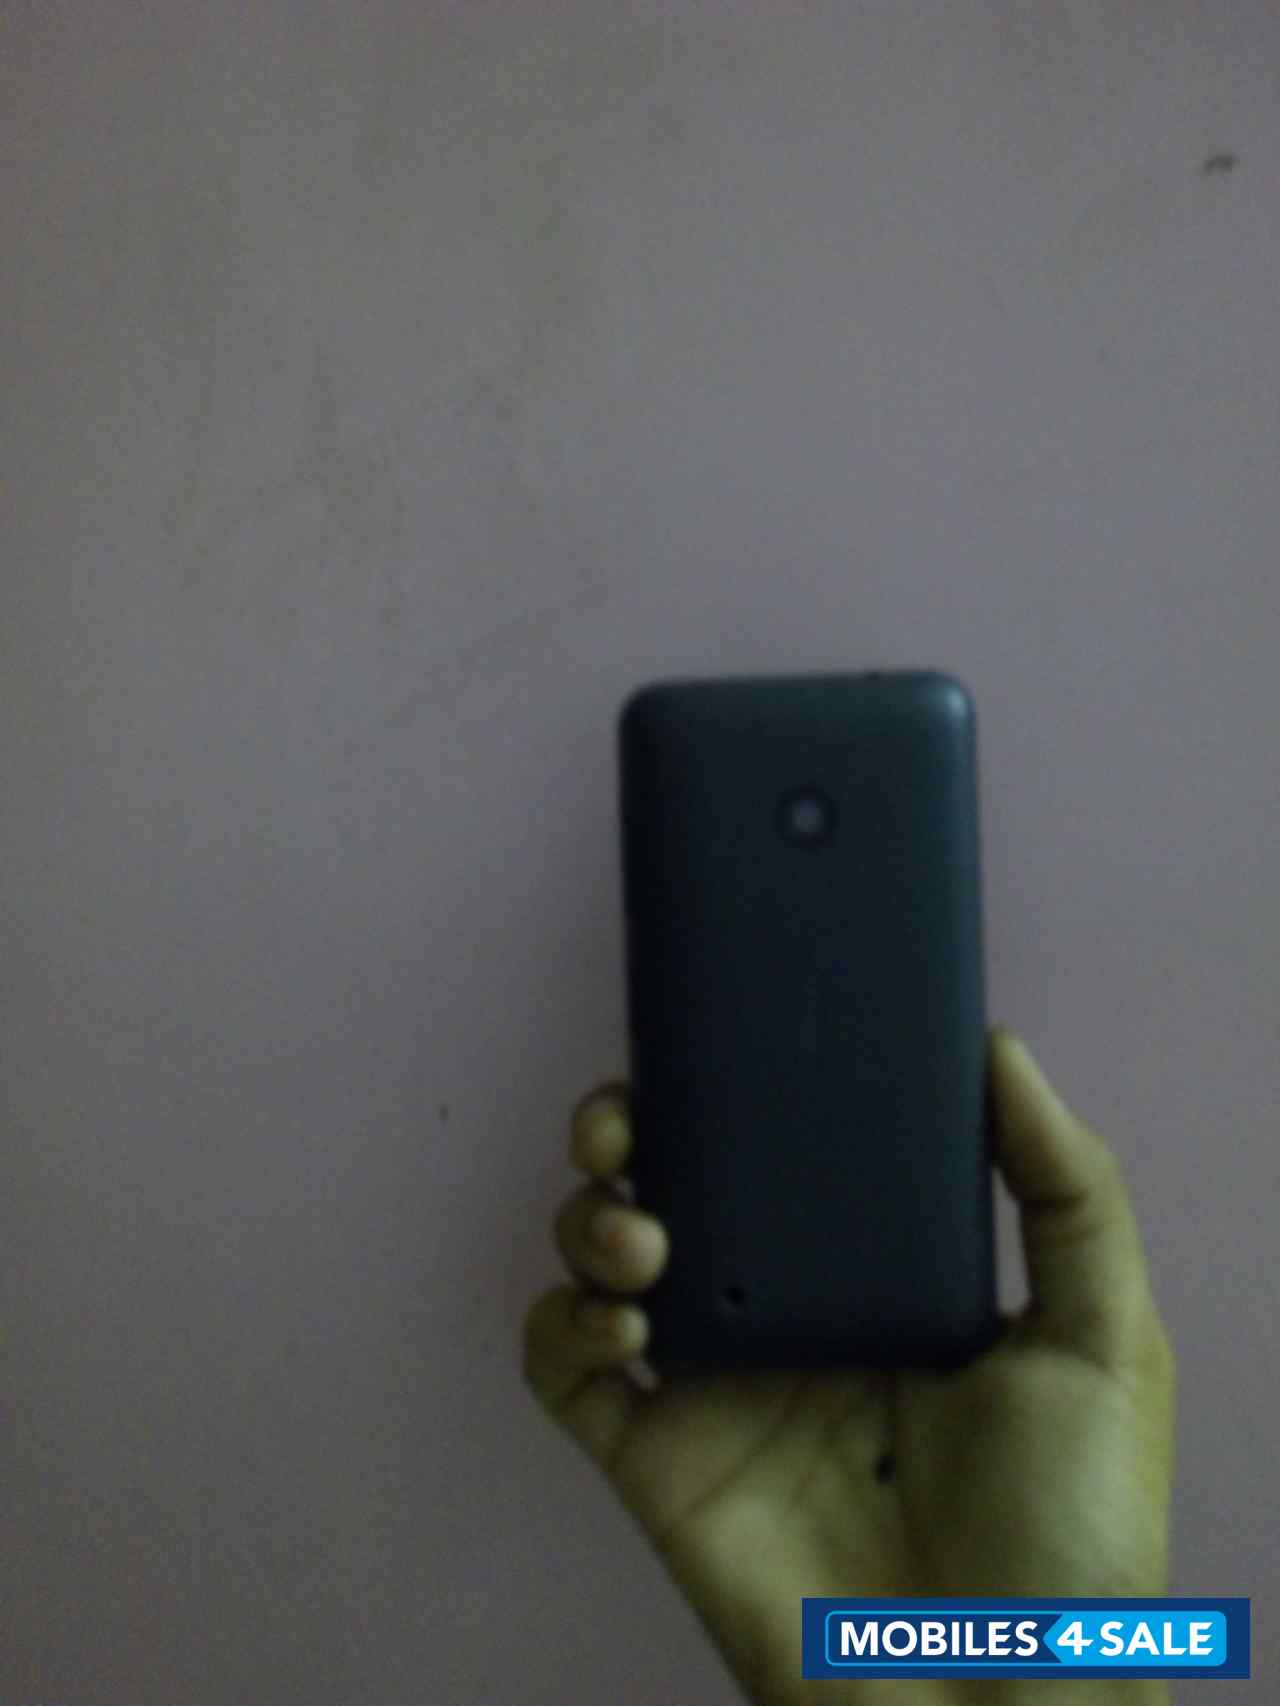 Black Nokia Lumia 530